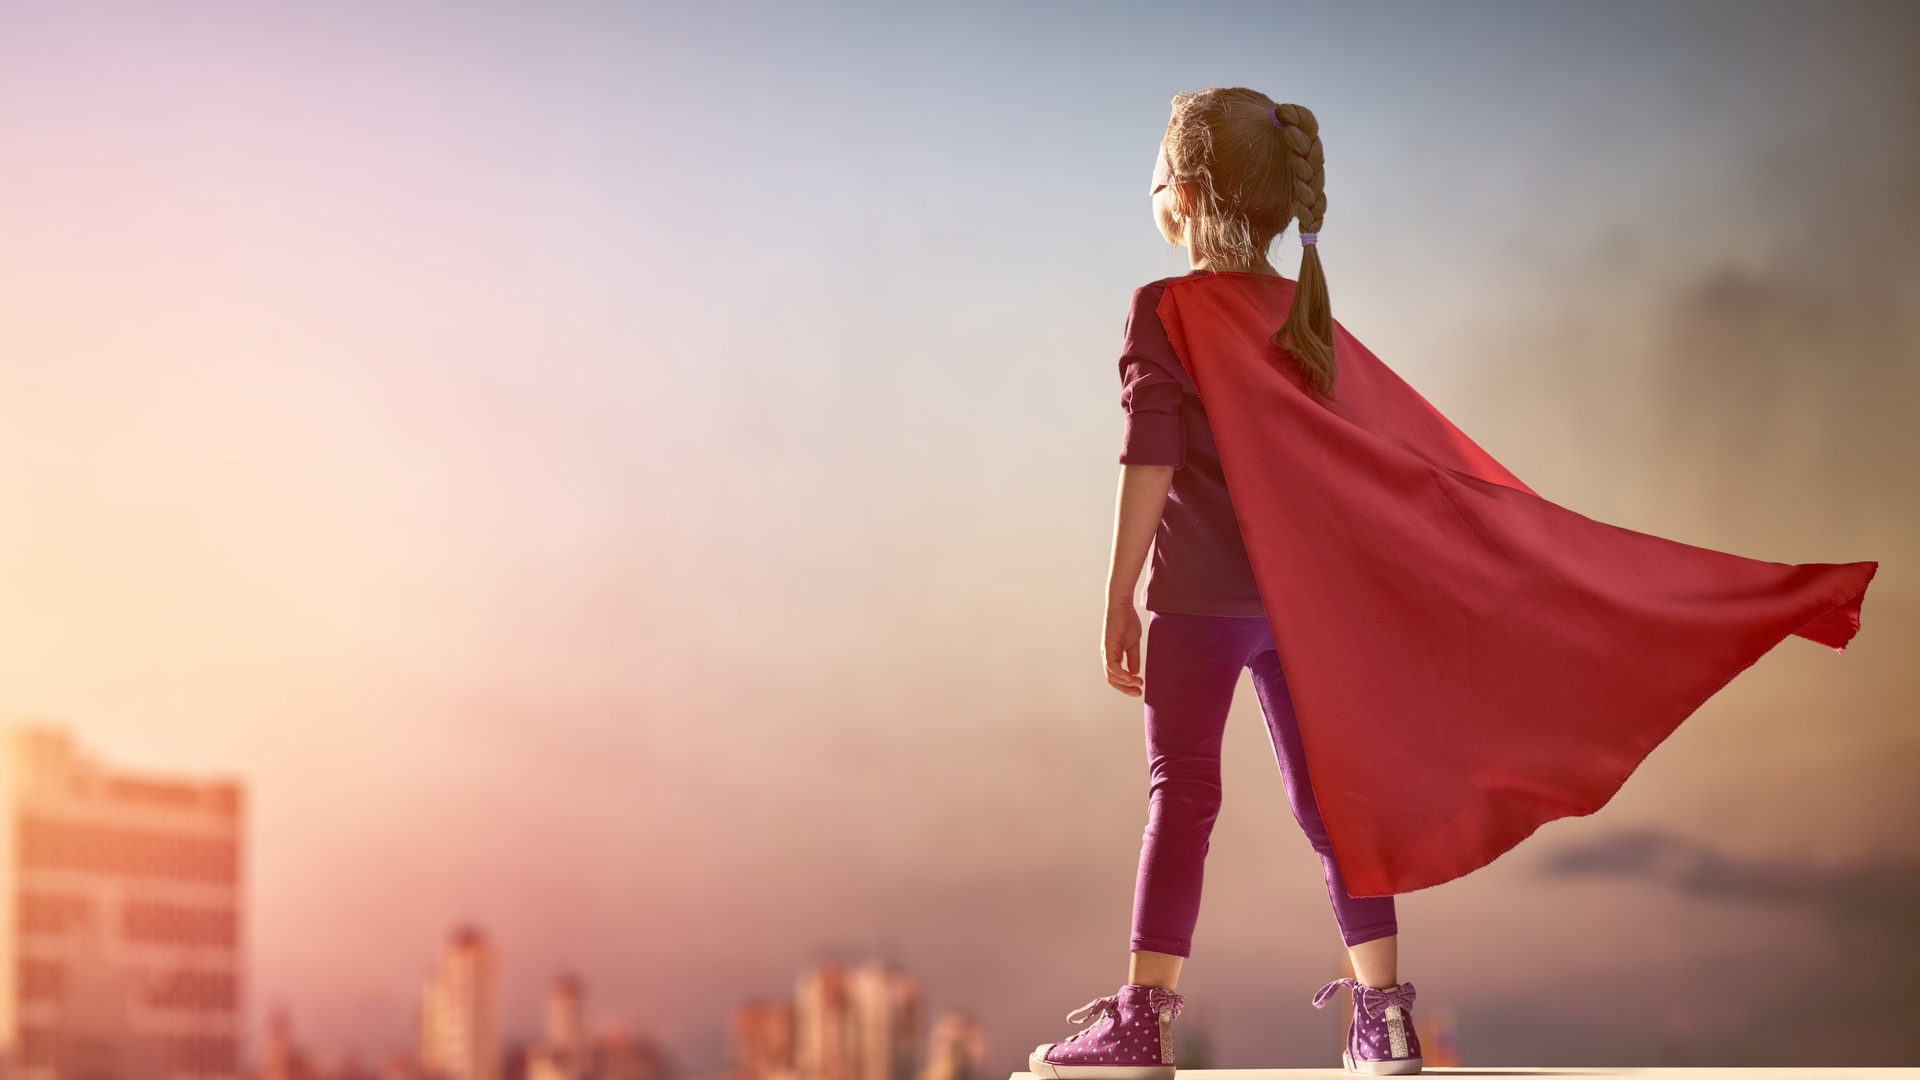 Frauen und Mädchen sollen selbstbestimmt handeln - zu sehen ein Maedchen in Superwoman-Montur